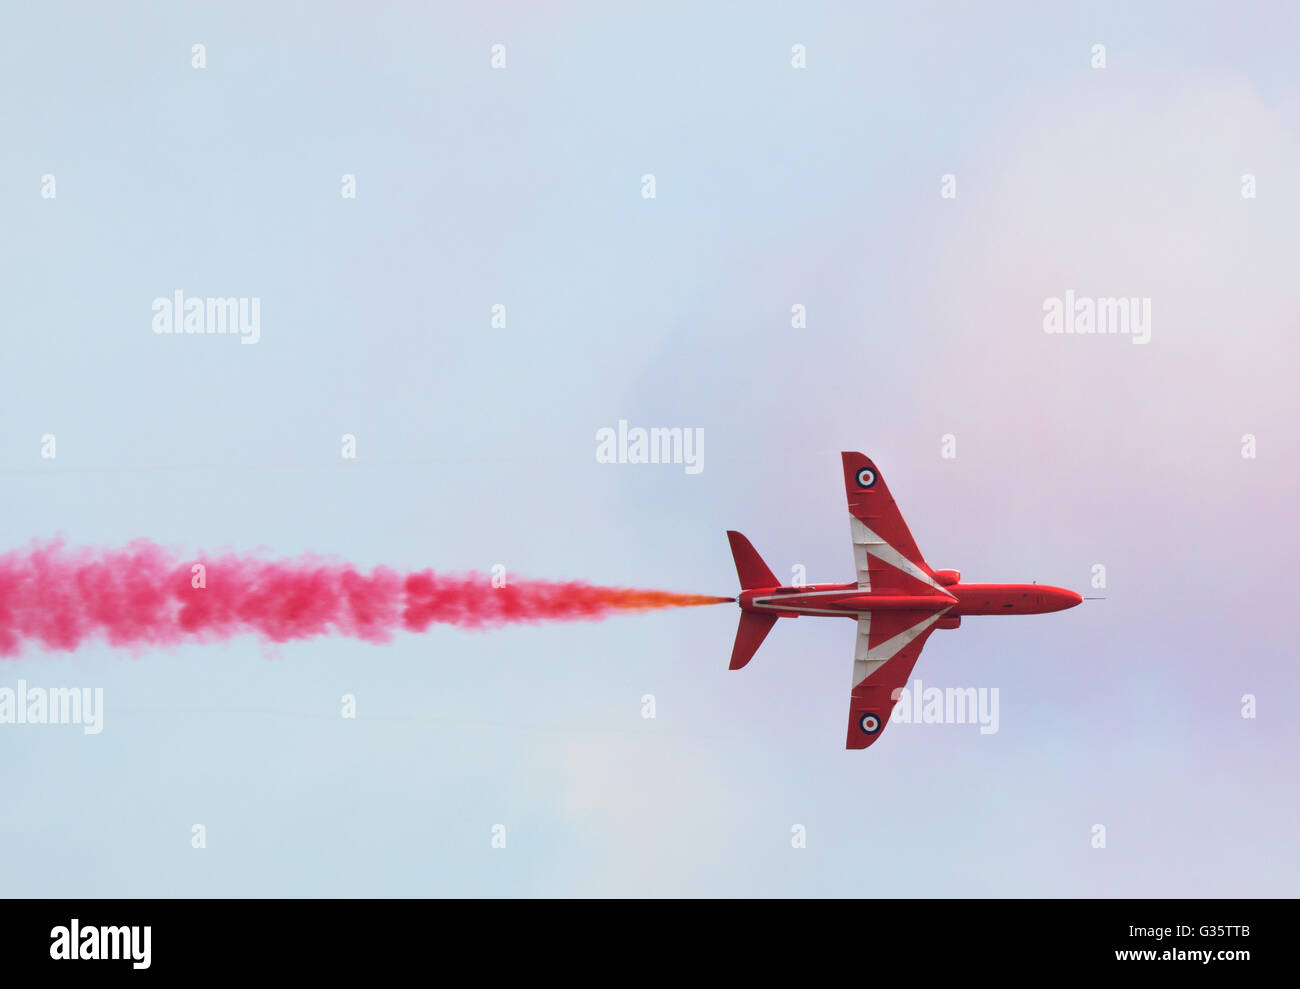 RAF frecce rosse piano volare dritti, con colorati di rosso fumo, Duxford Airshow Cambridgeshire, Regno Unito Foto Stock